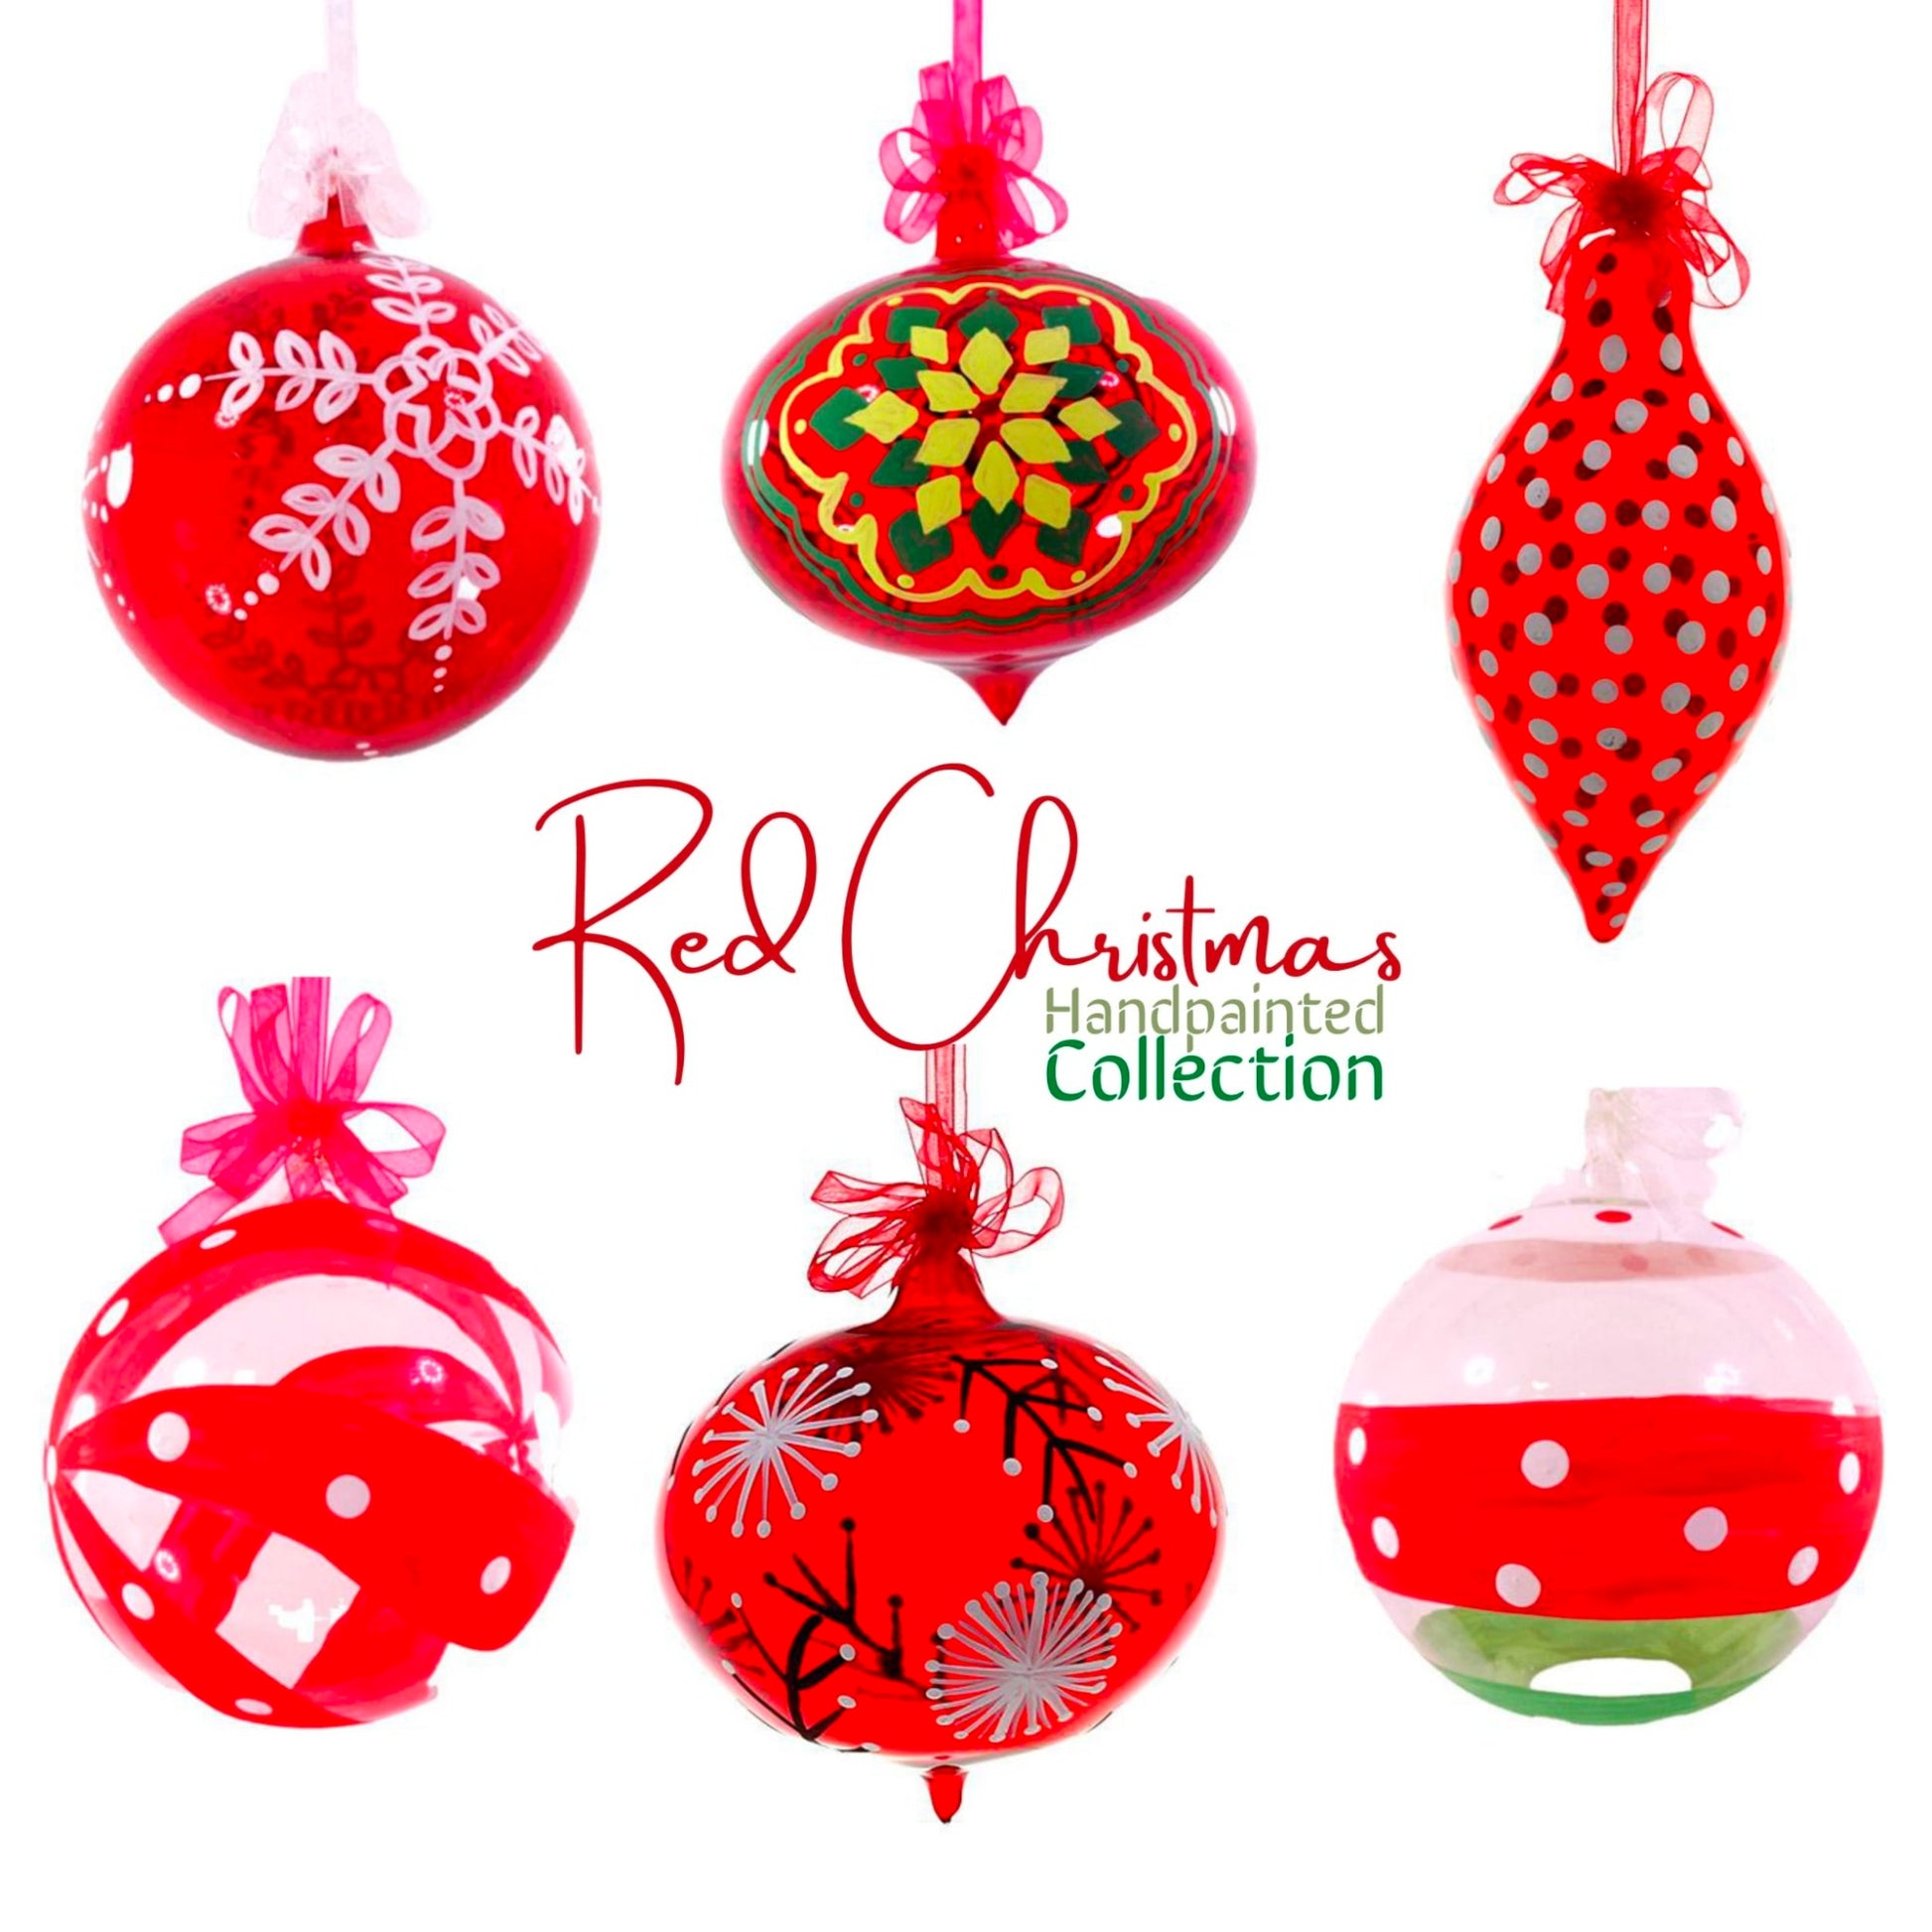 Red Bulbs : Christmas Tree Balls